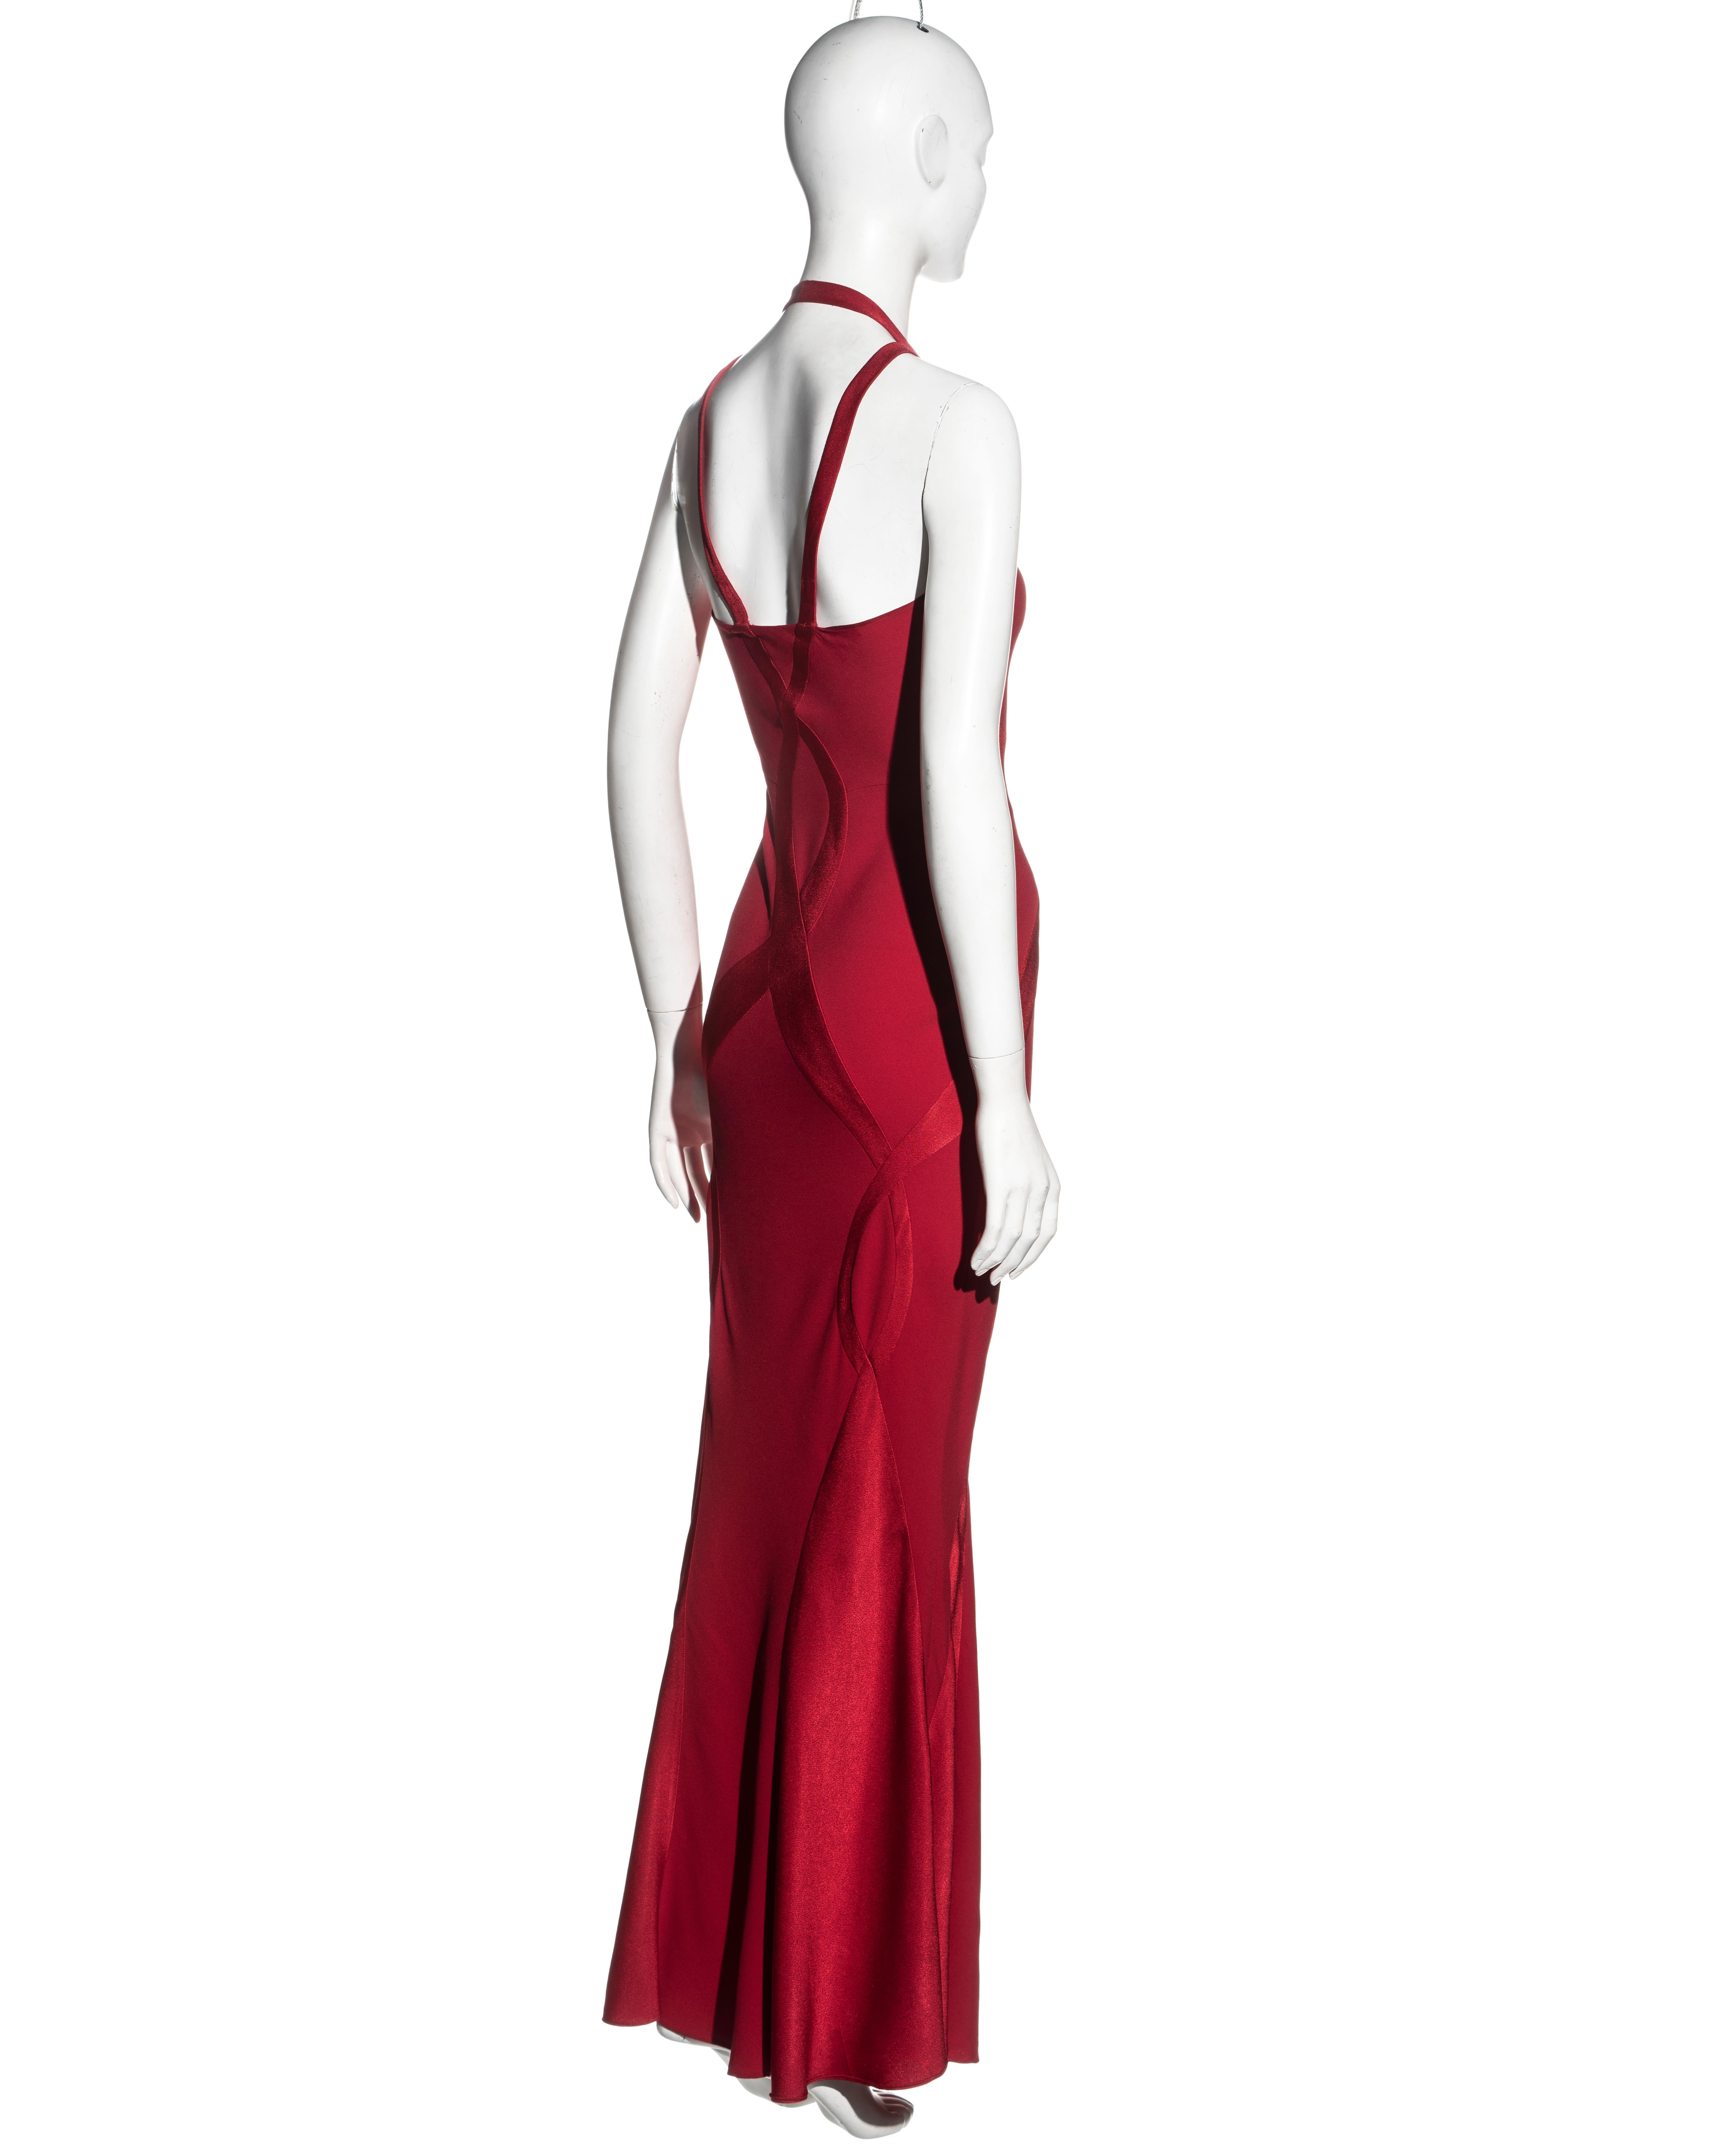 Women's Christian Dior by John Galliano red bias-cut evening dress, fw 2004